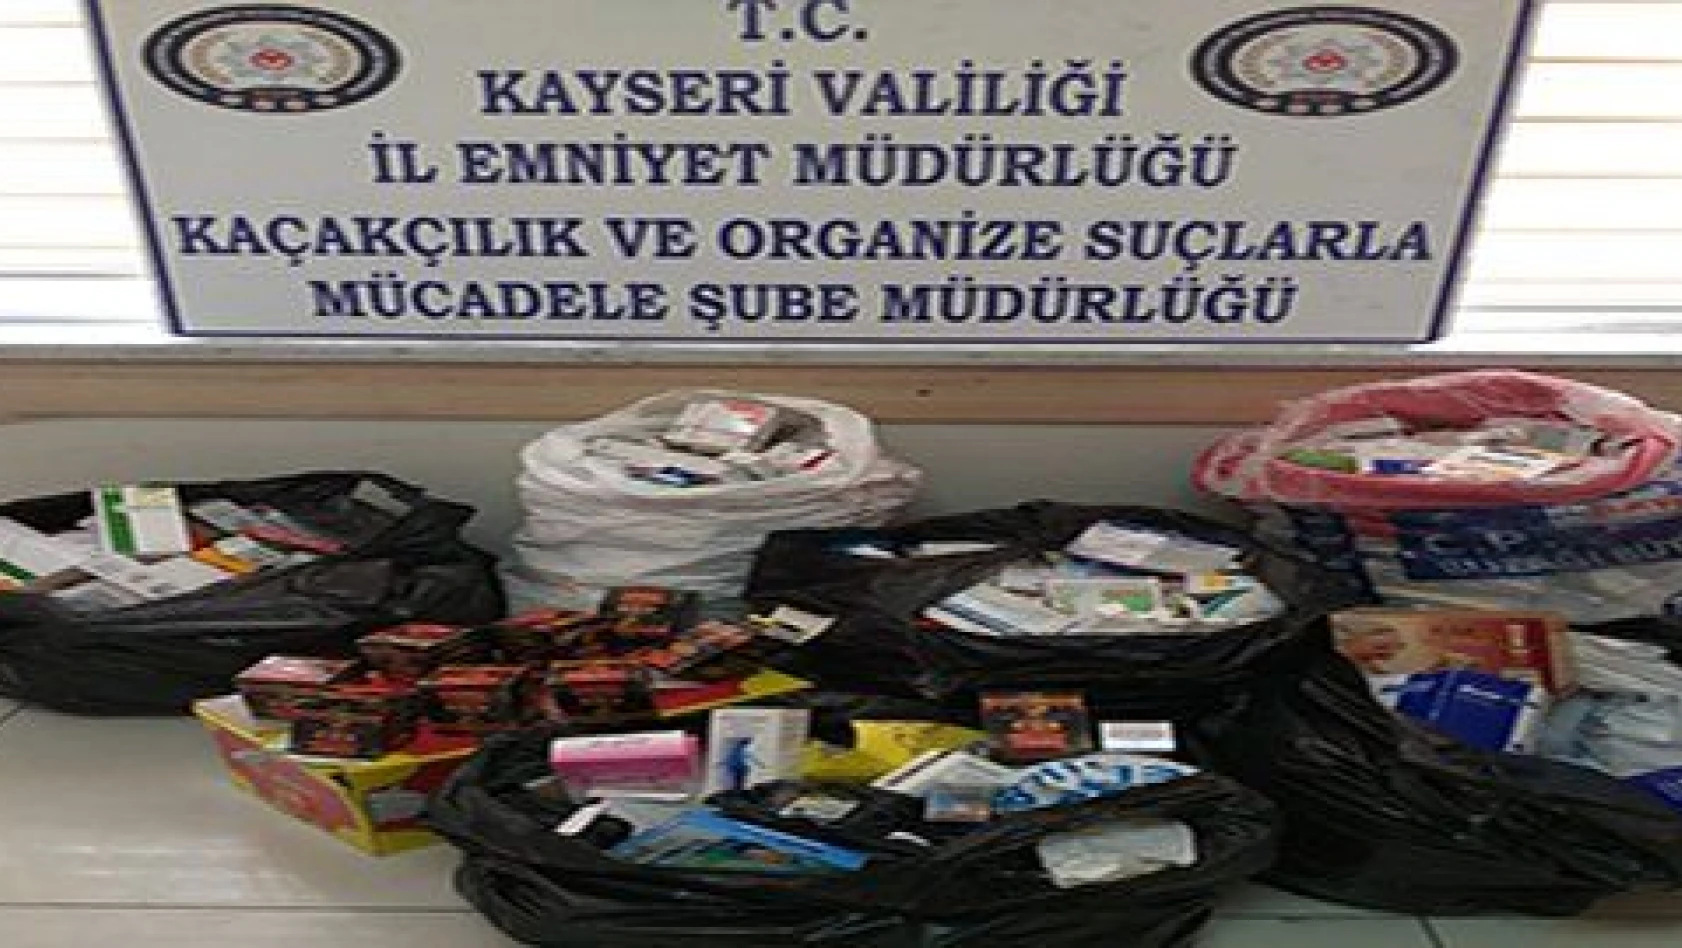 Kayseri'de çok sayıda kaçak cinsel içerikli hap ve ilaç ele geçirildi 